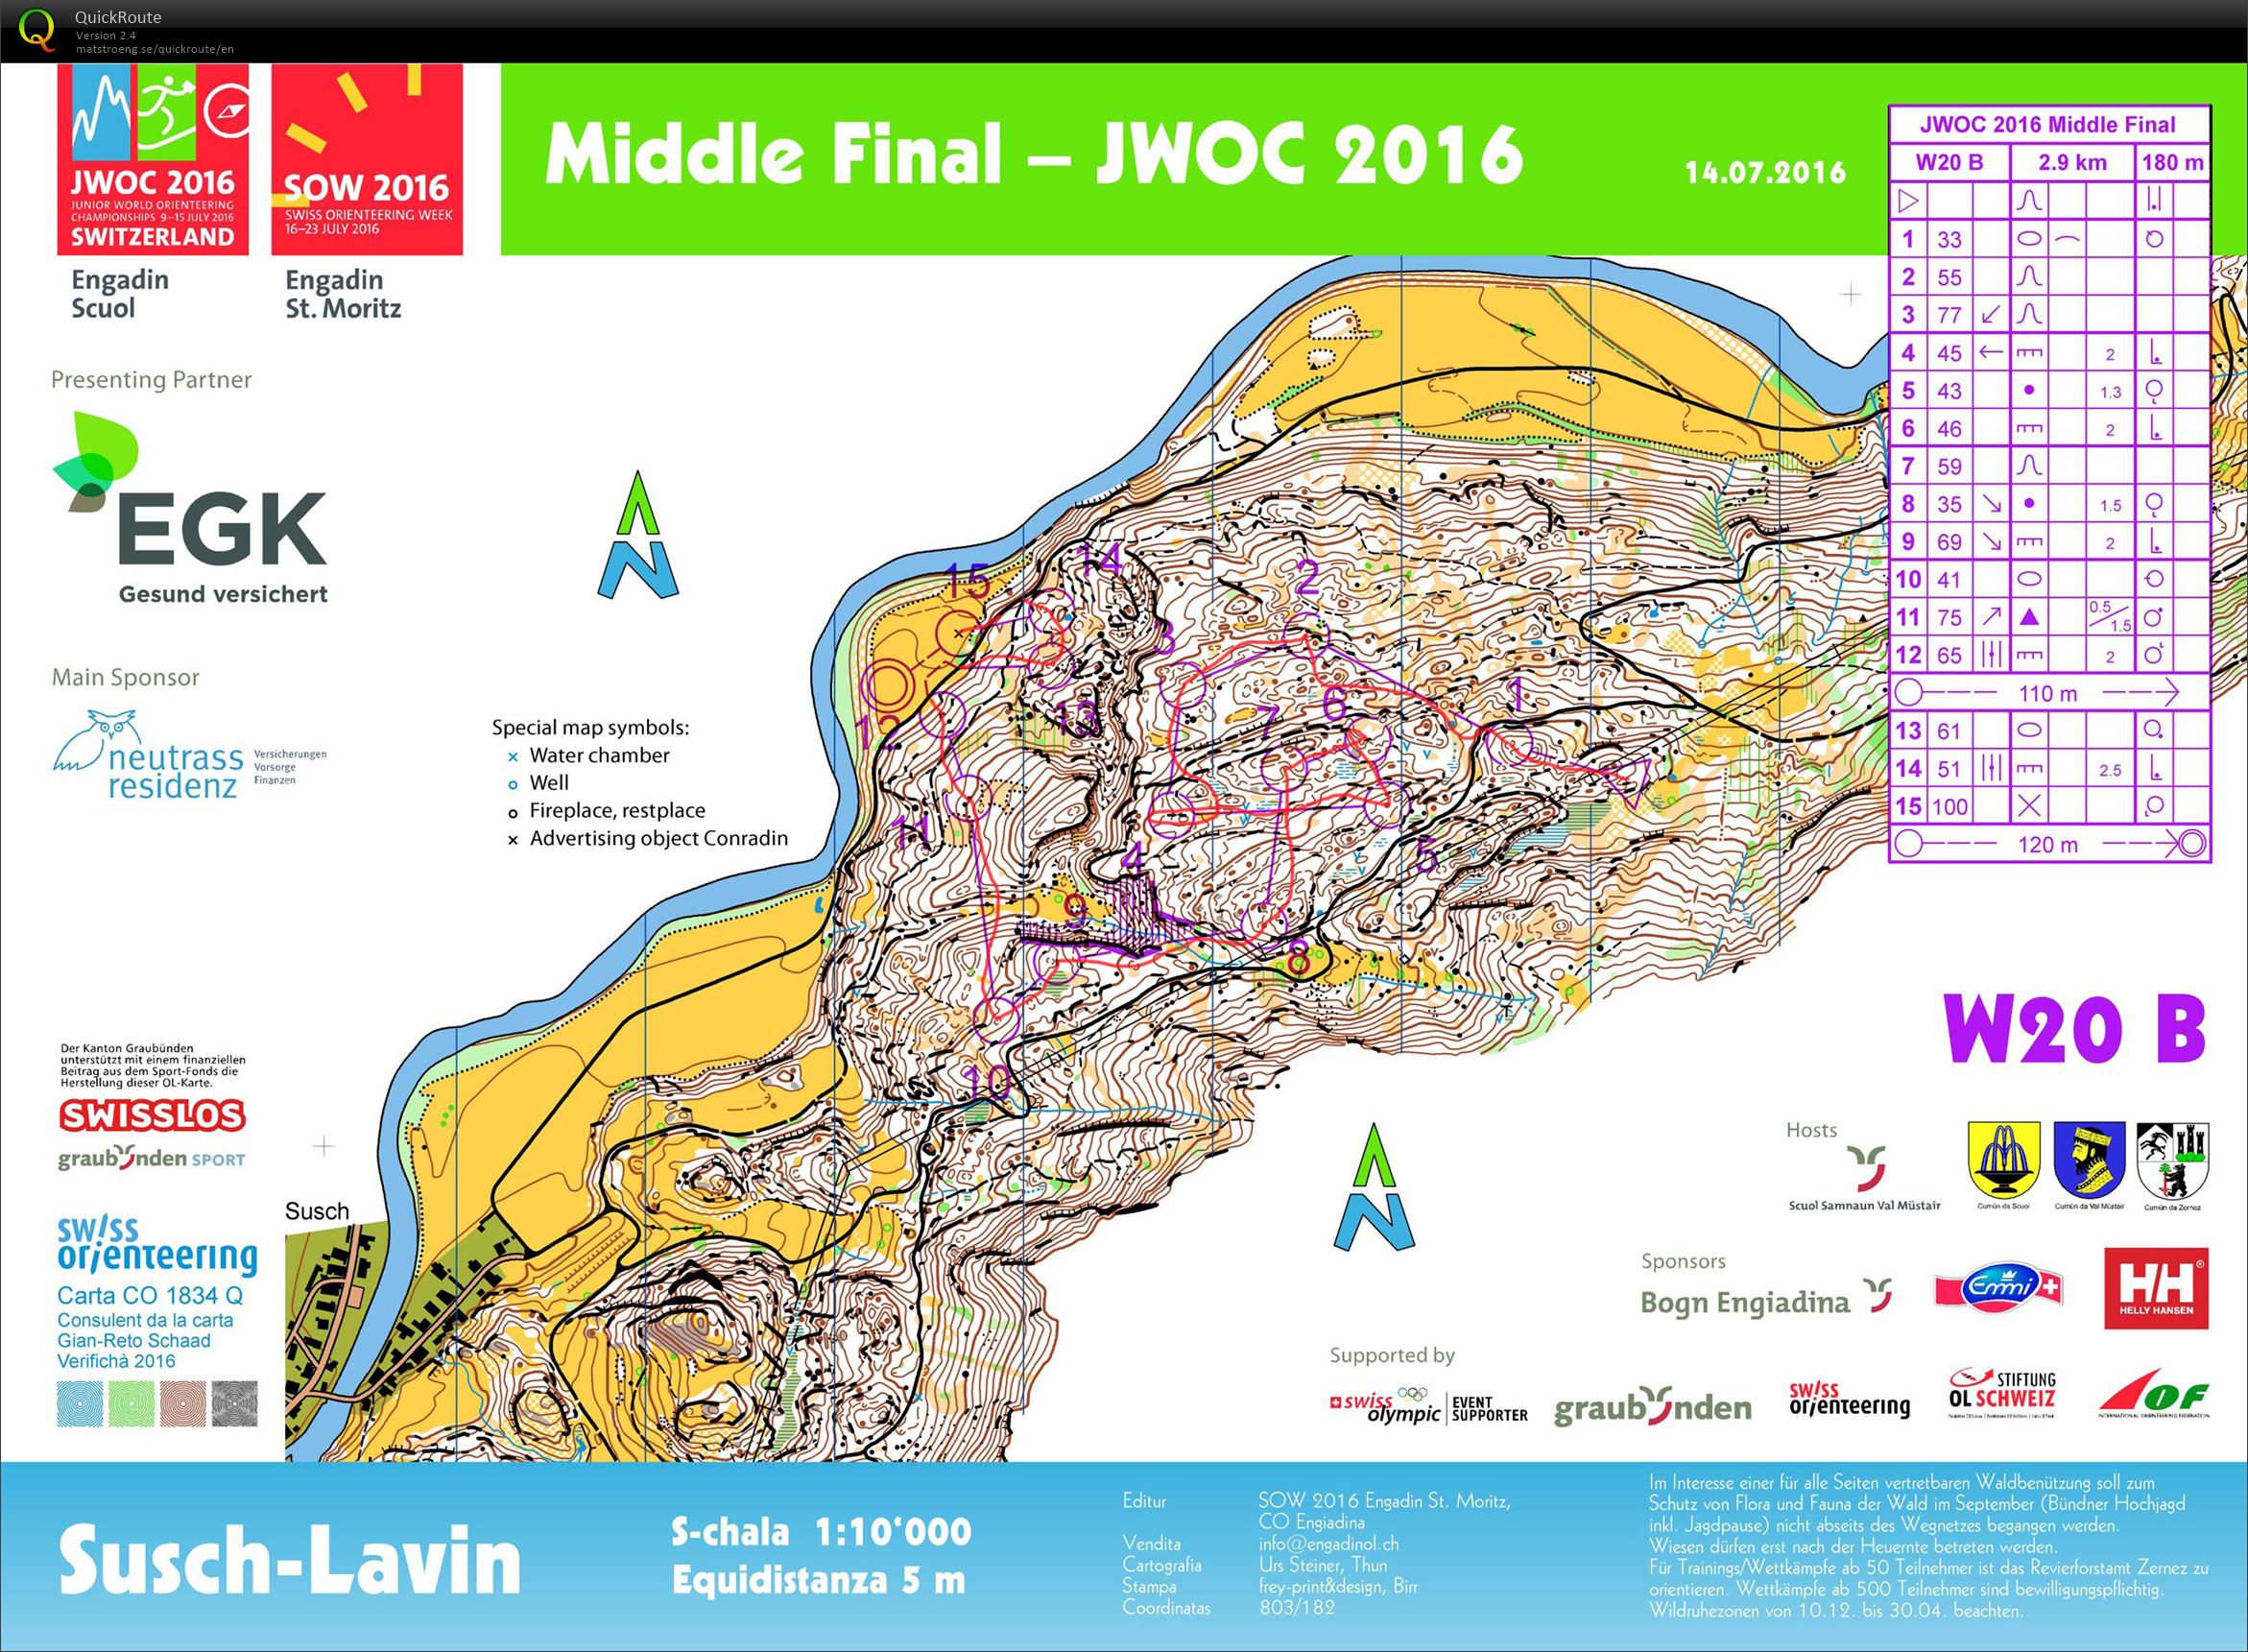 JWOC 2016 Middle B Final (14-07-2016)